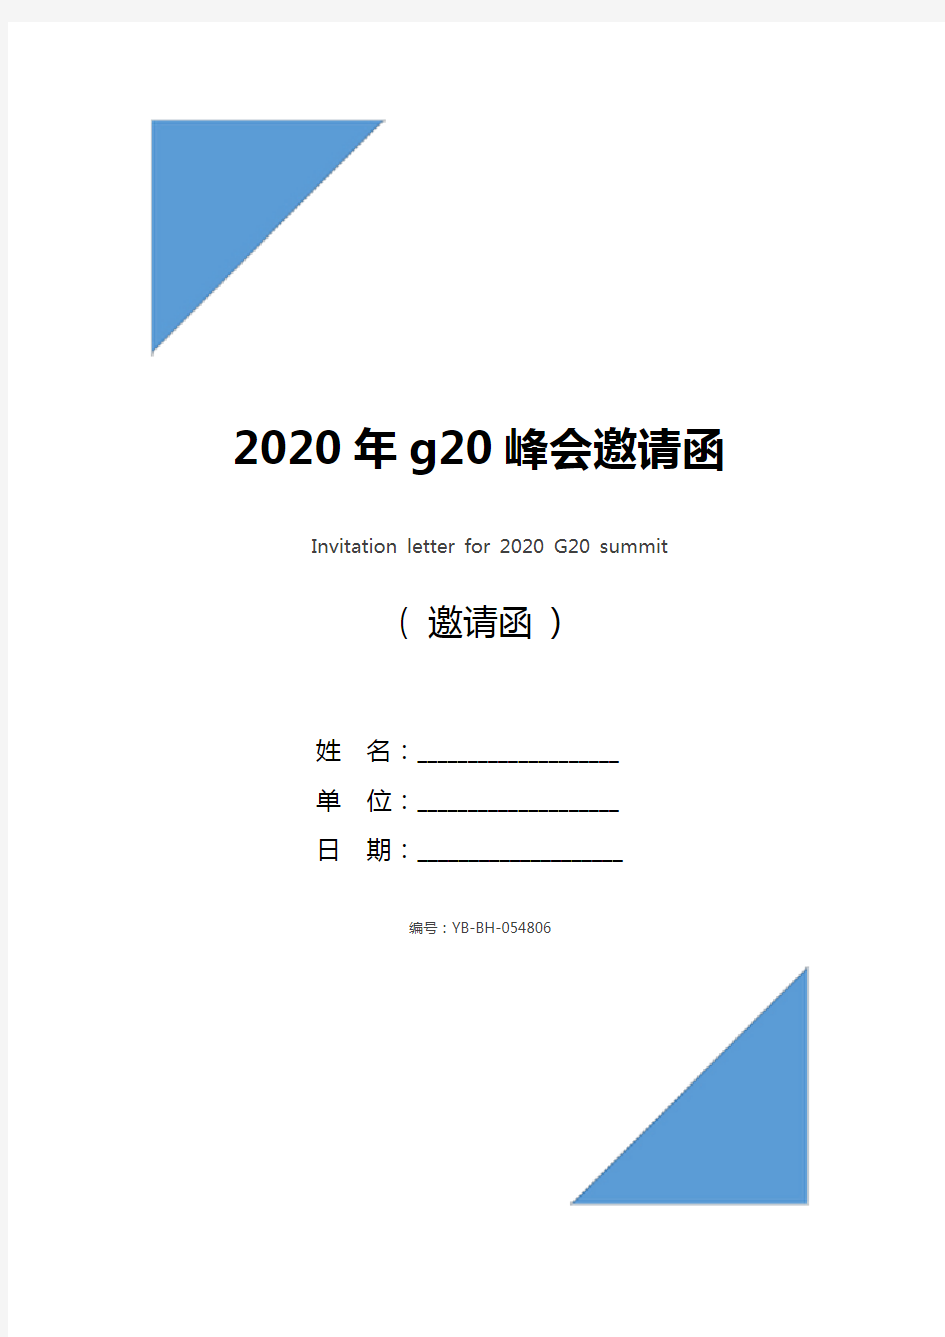 2020年g20峰会邀请函